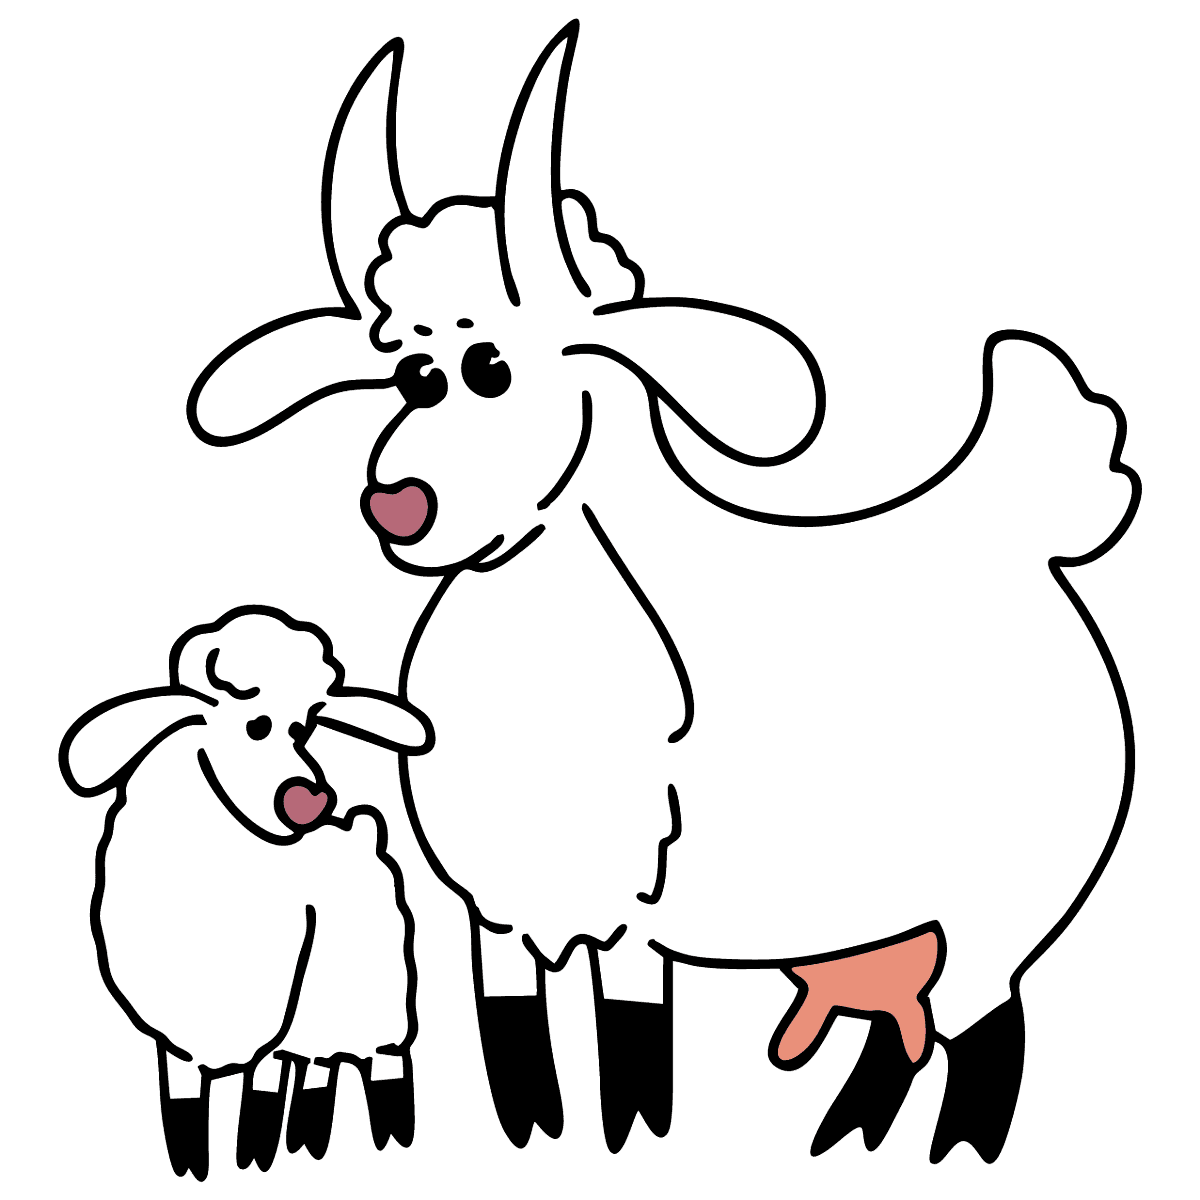 Категория Раскраски коза козел козленок Раскраска коза и козленок в пятнышку